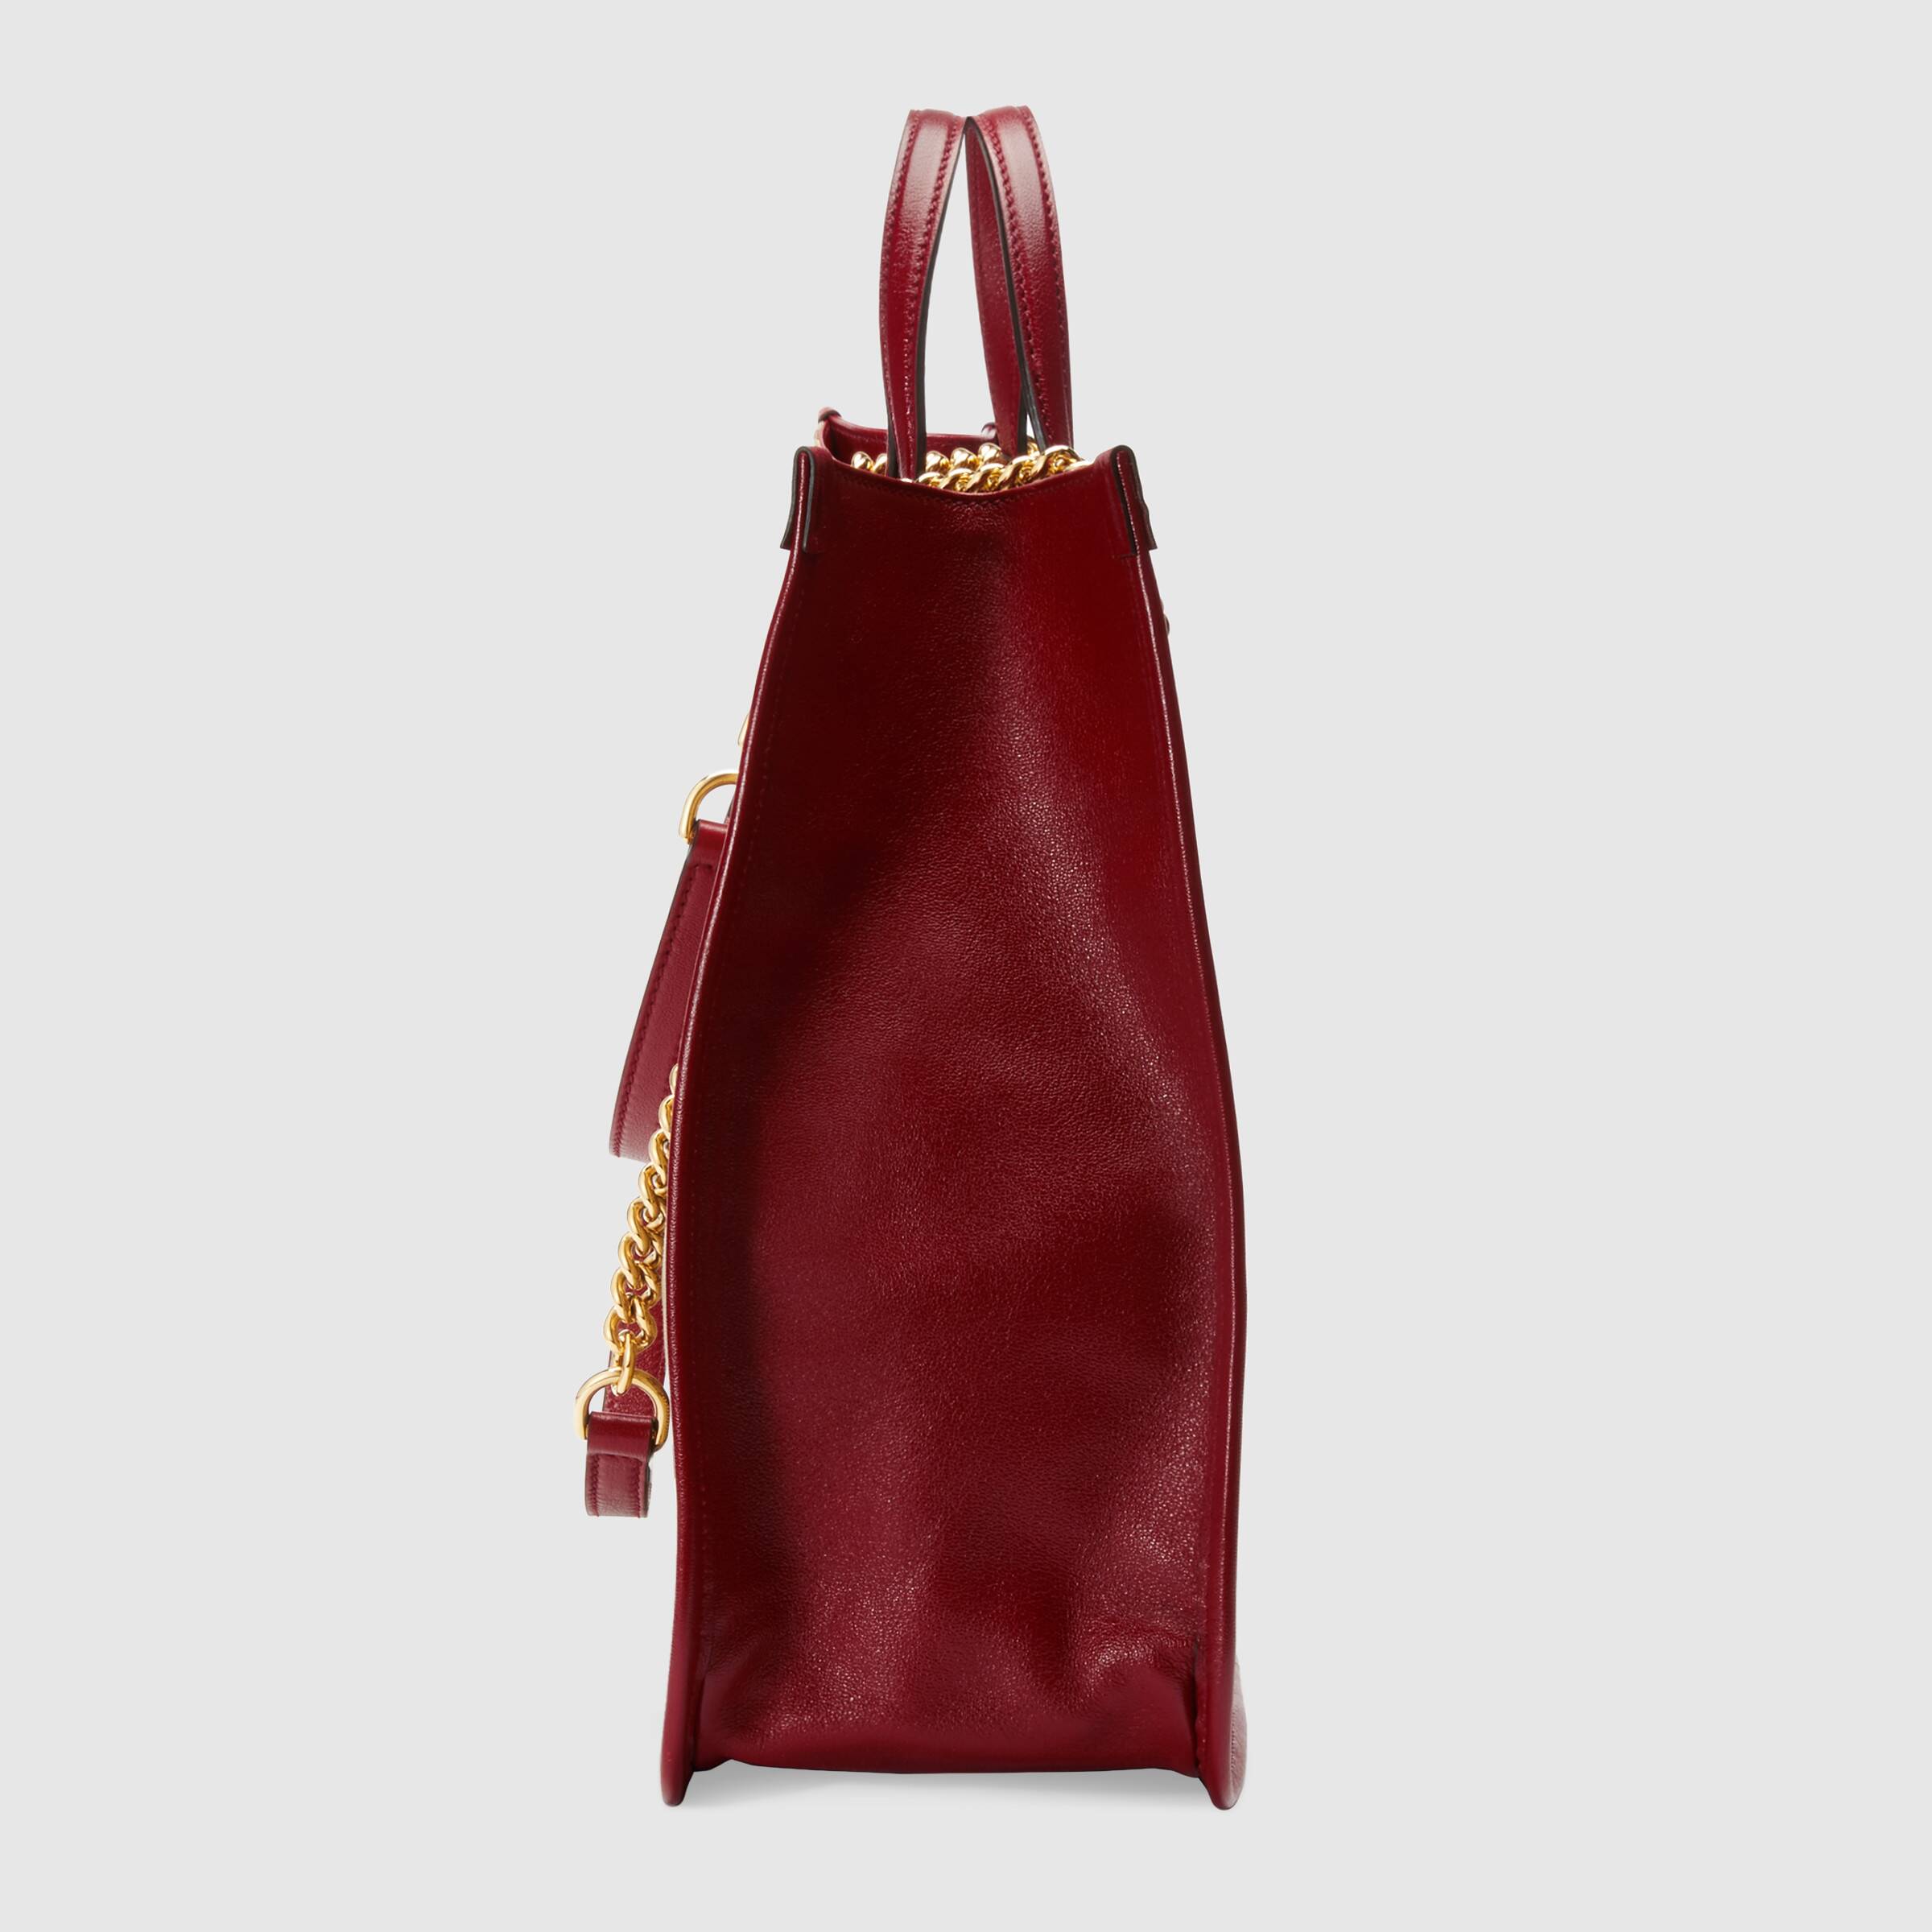 Gucci 1955 Horsebit Large Tote Bag Red